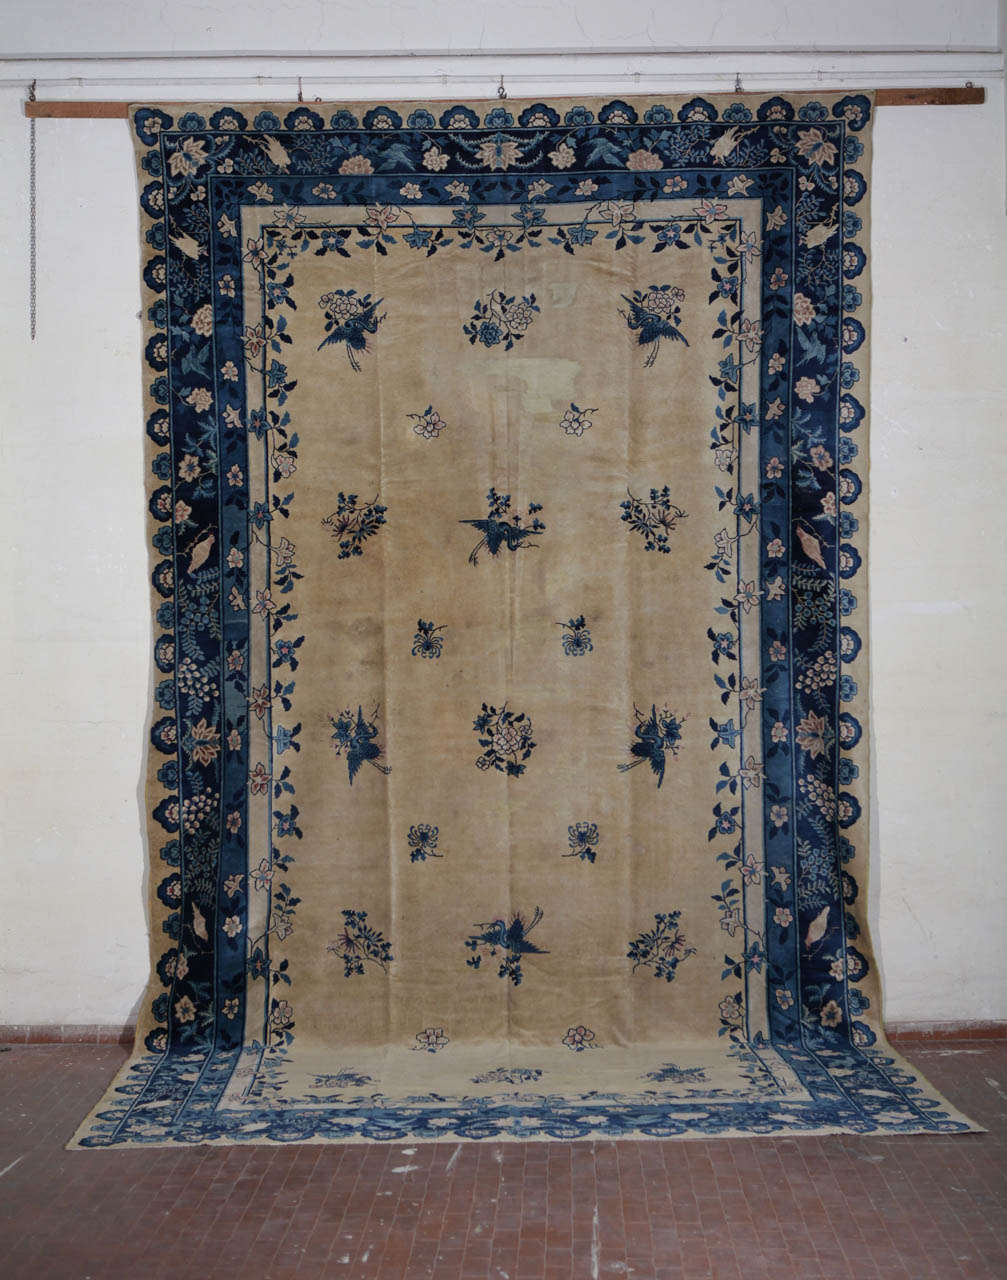 A Chinese Carpet 1920 circa.
cm 530 x310